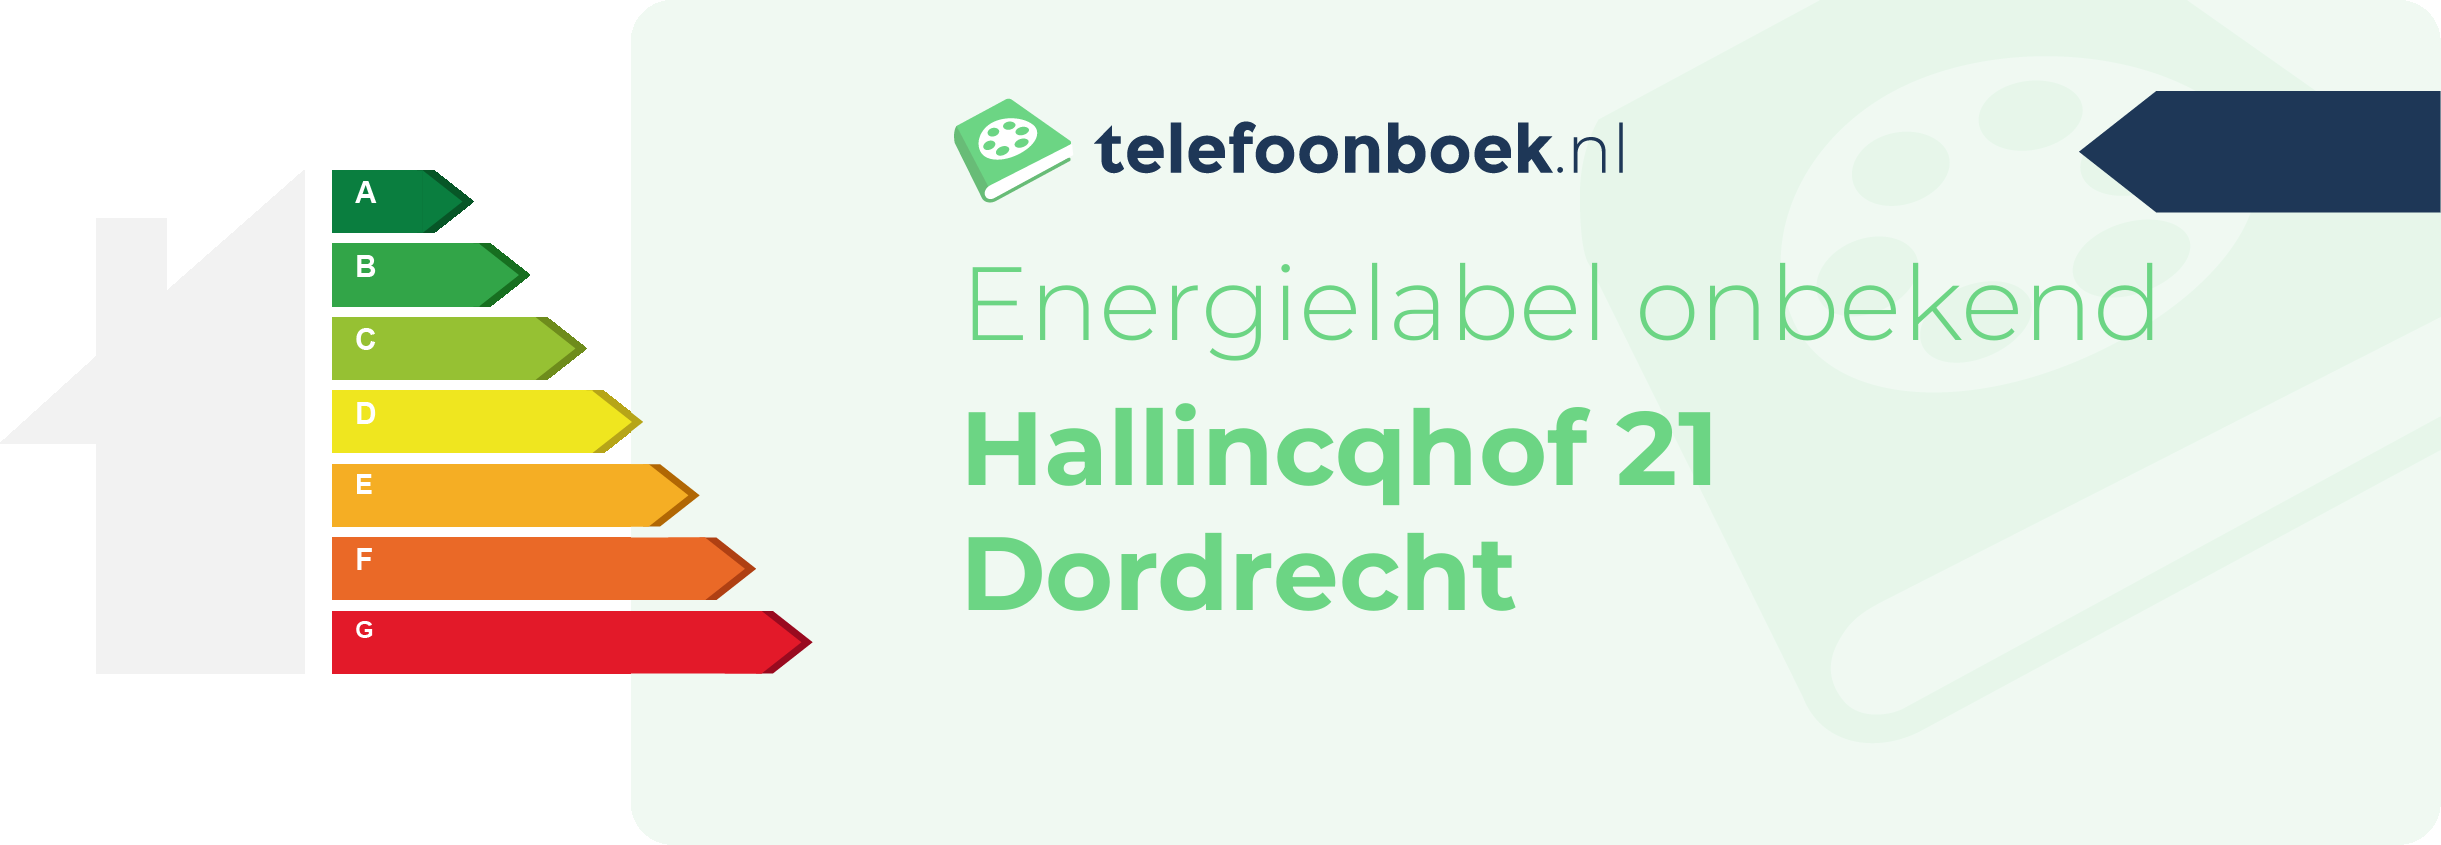 Energielabel Hallincqhof 21 Dordrecht